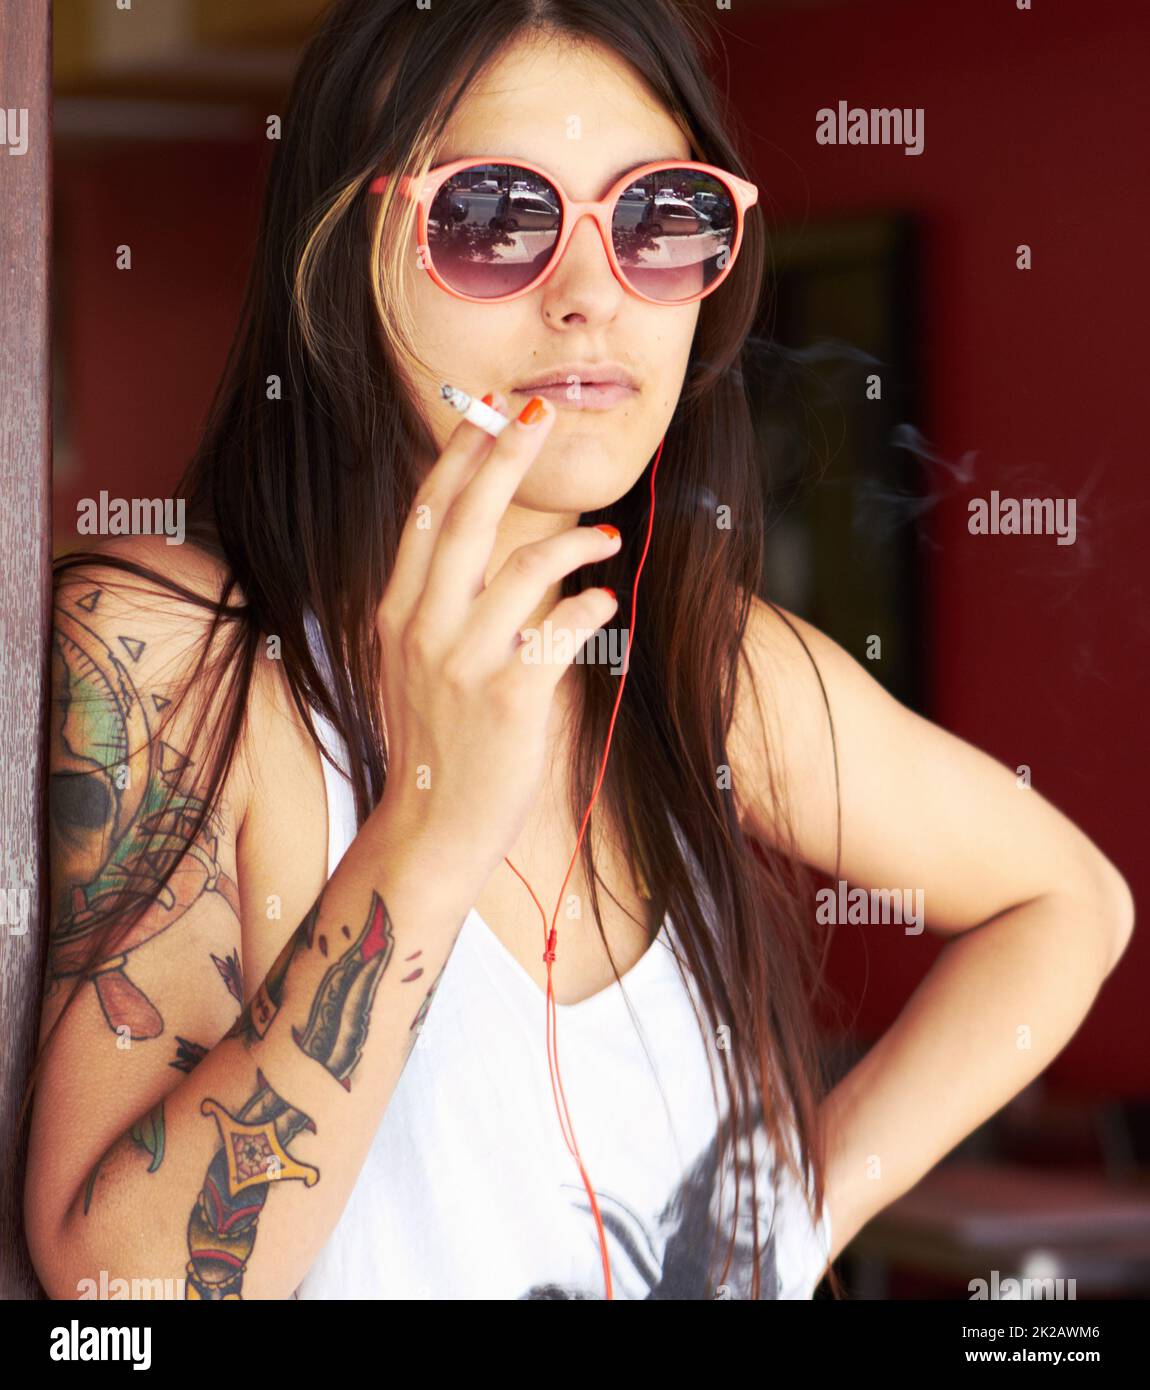 Rebel à cœur. Photo d'une belle jeune femme tatouée fumant une cigarette tout en écoutant de la musique. Banque D'Images